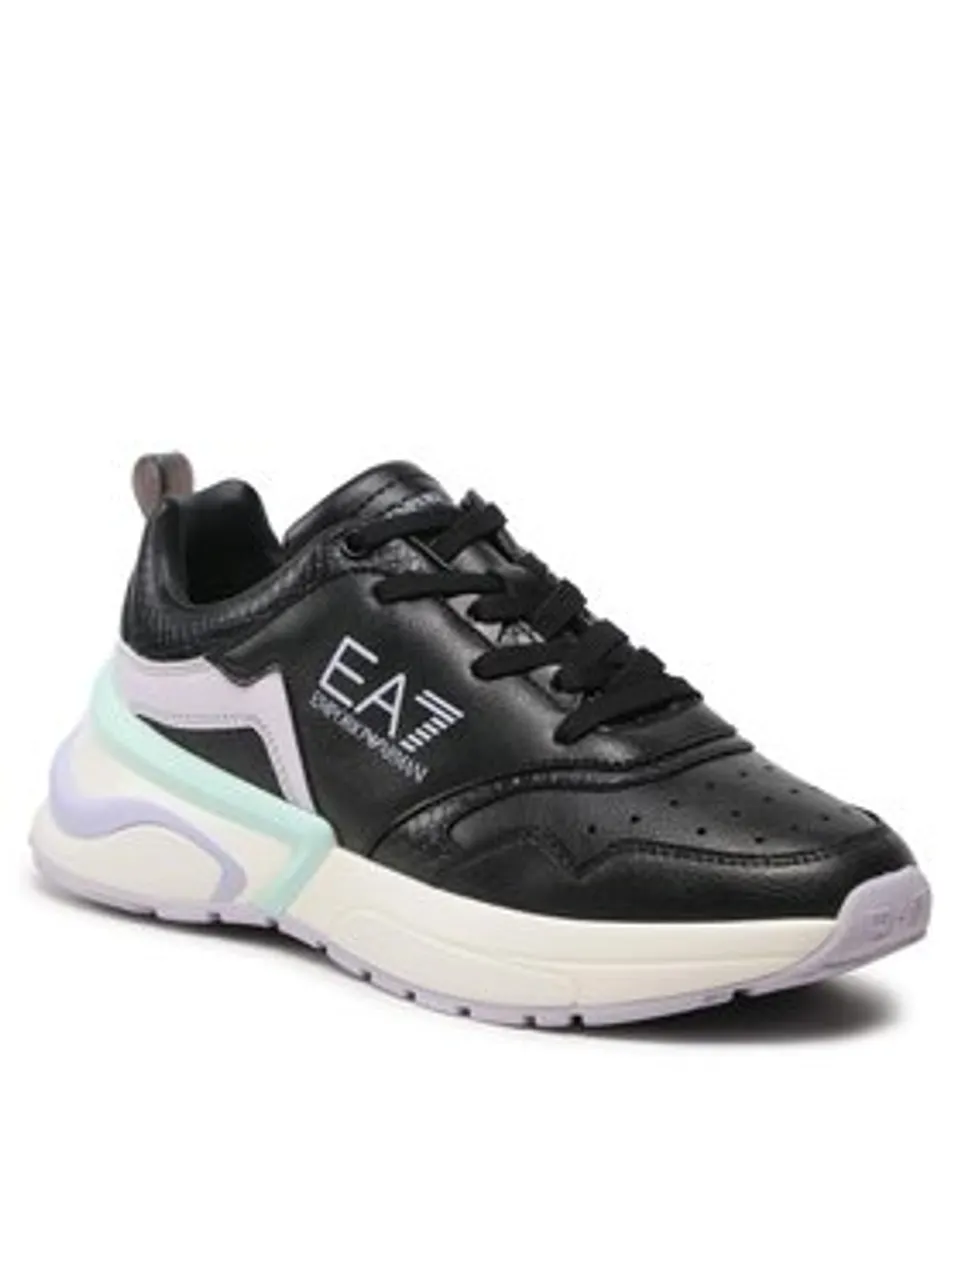 EA7 Emporio Armani Sneakers X7X007 XK310 R664 Schwarz